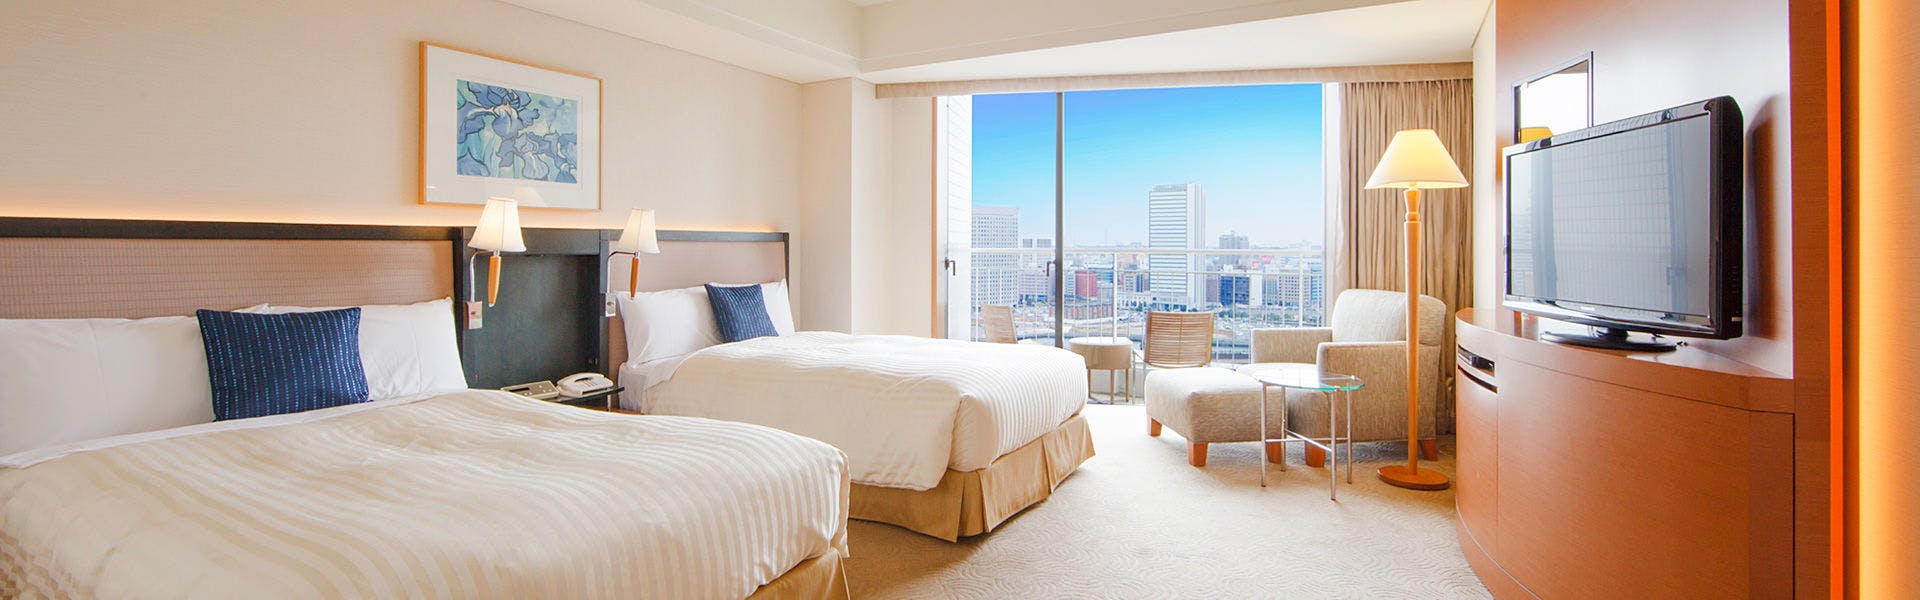 記念日におすすめのホテル・【横浜ベイホテル東急】 の空室状況を確認するの写真3